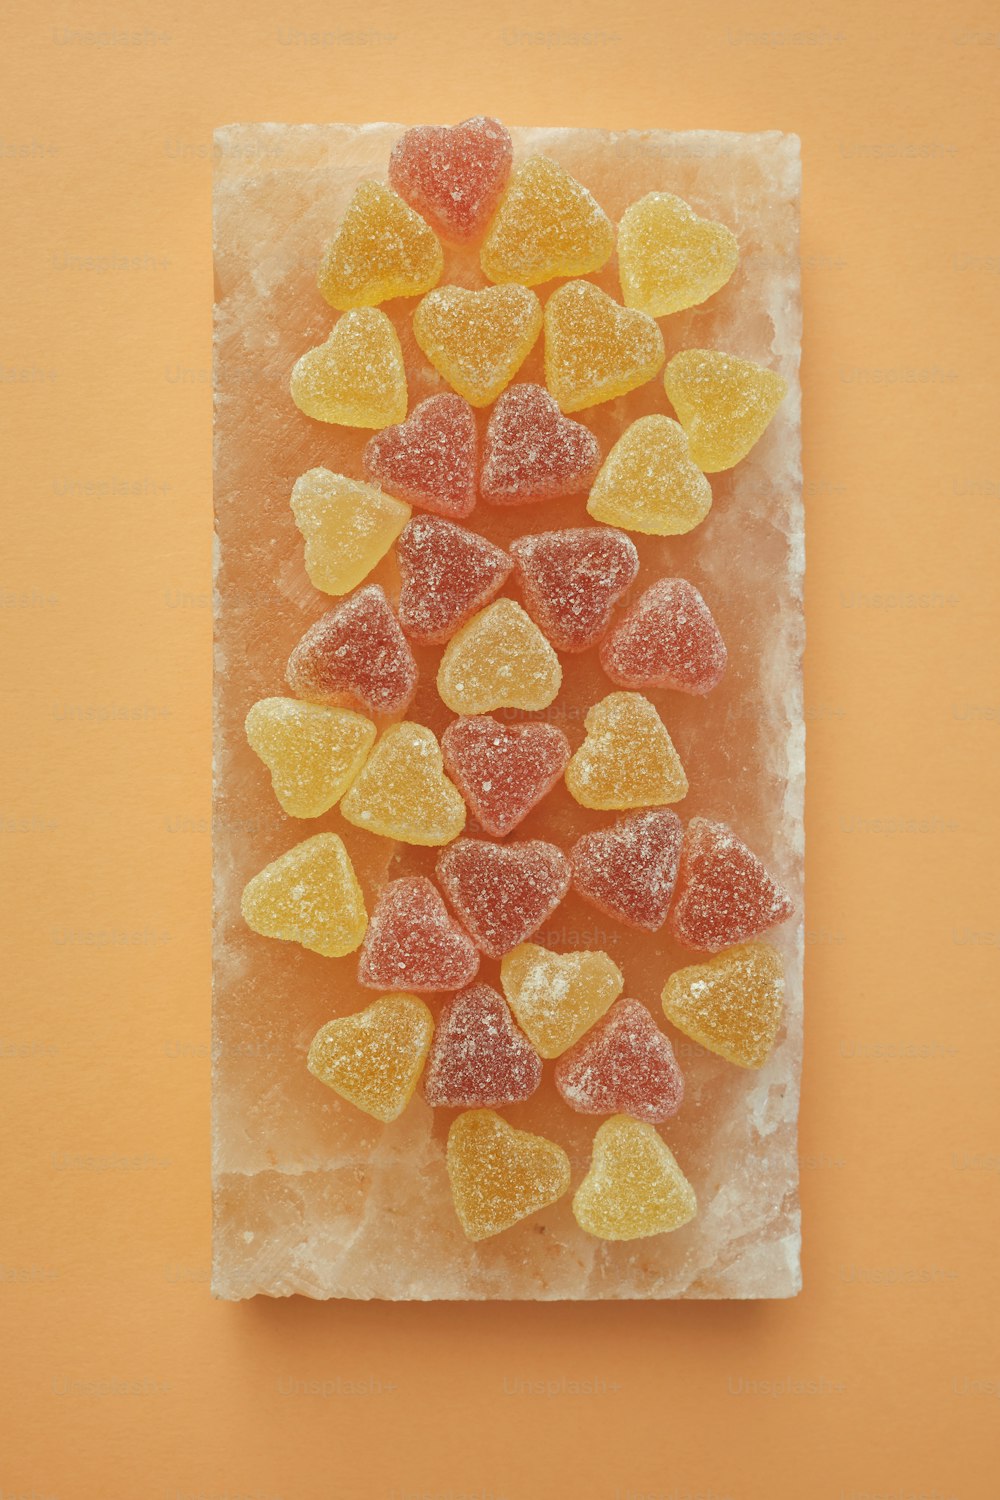 gummy bears arranged on a piece of ice